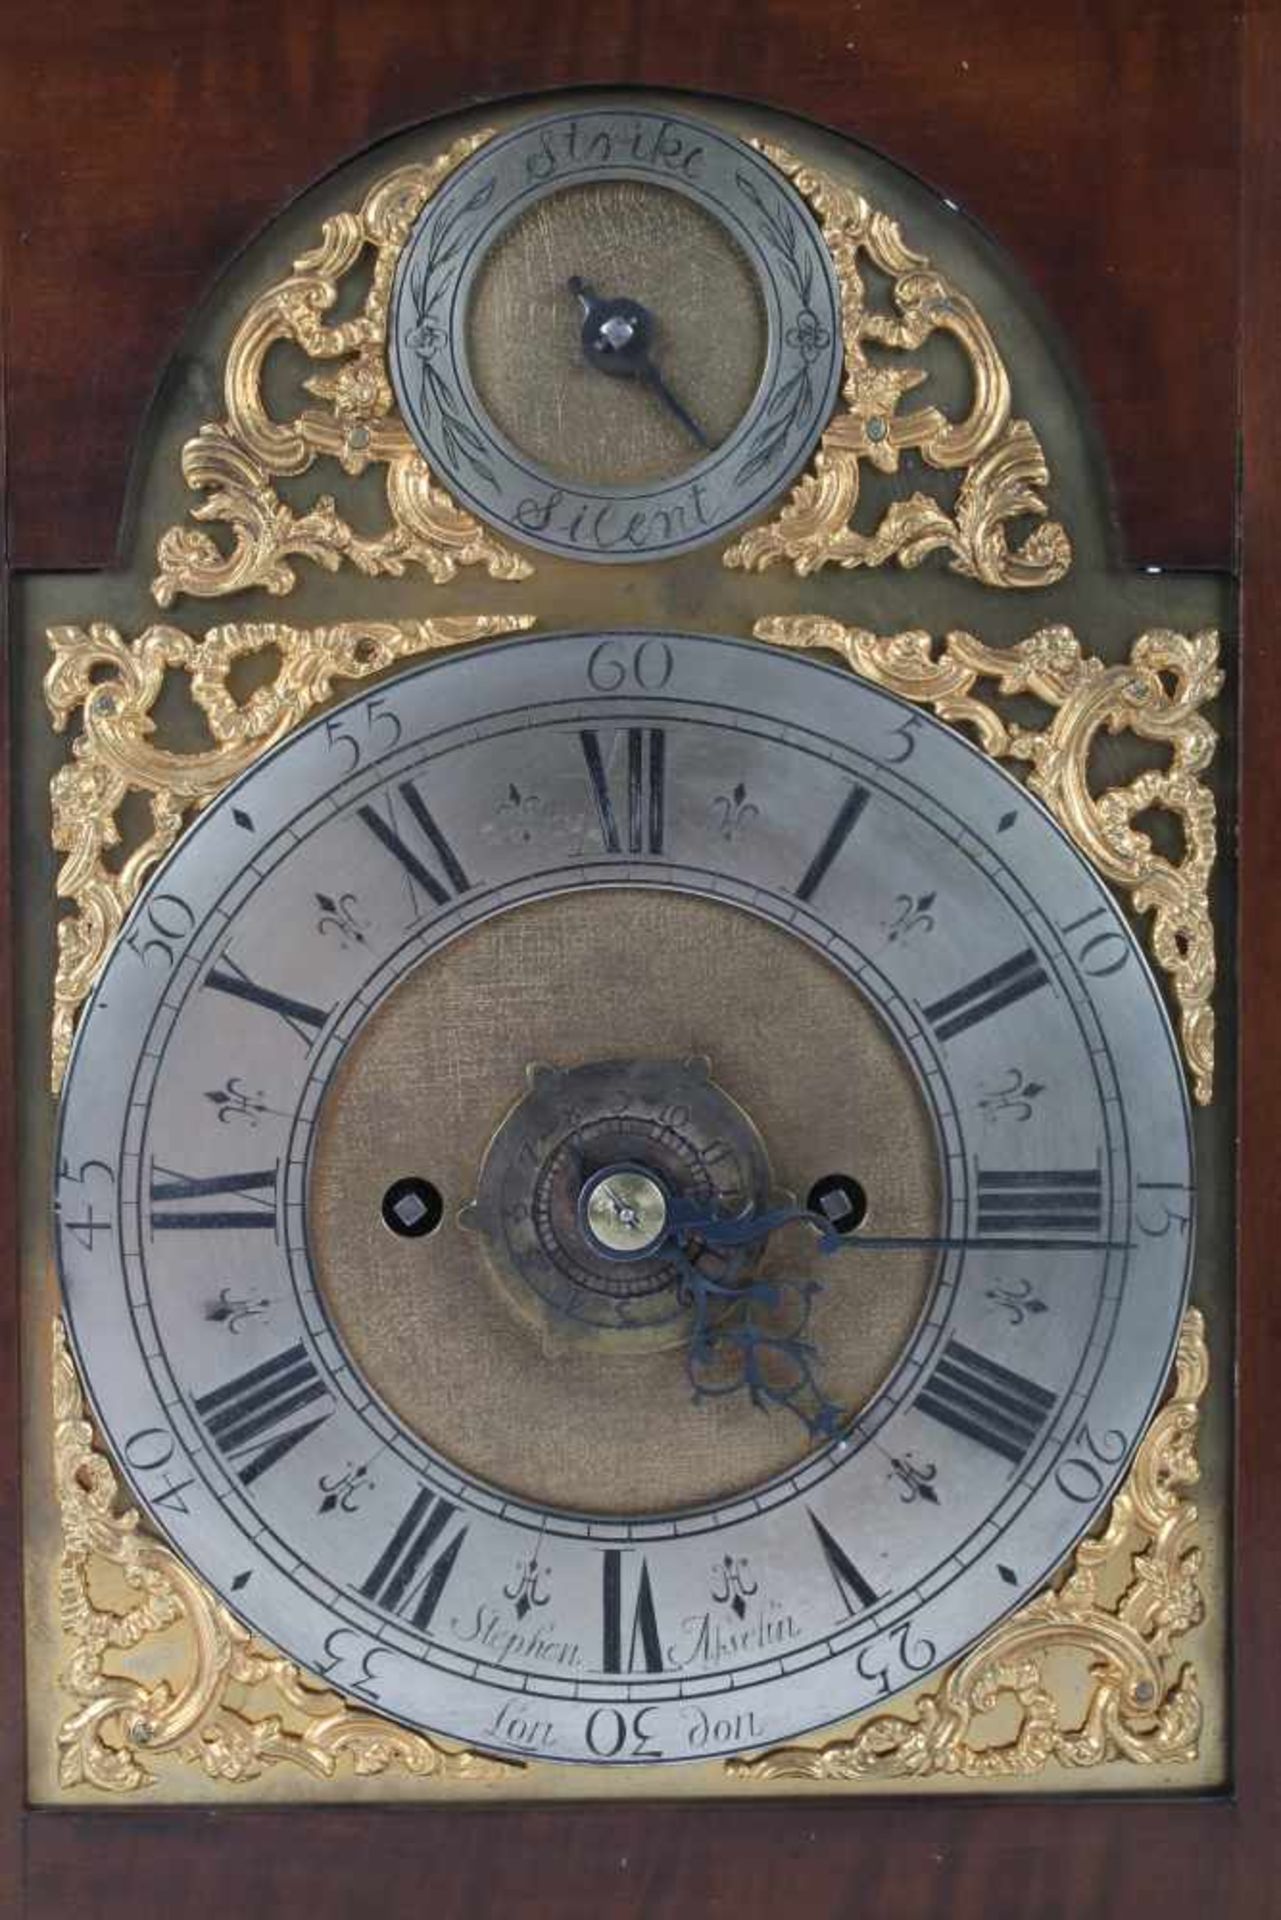 Stockuhr, London, bracket clock,Holzgehäuse m. Messingaplikken, verziertes Zifferblatt, bezeichnet - Image 3 of 6